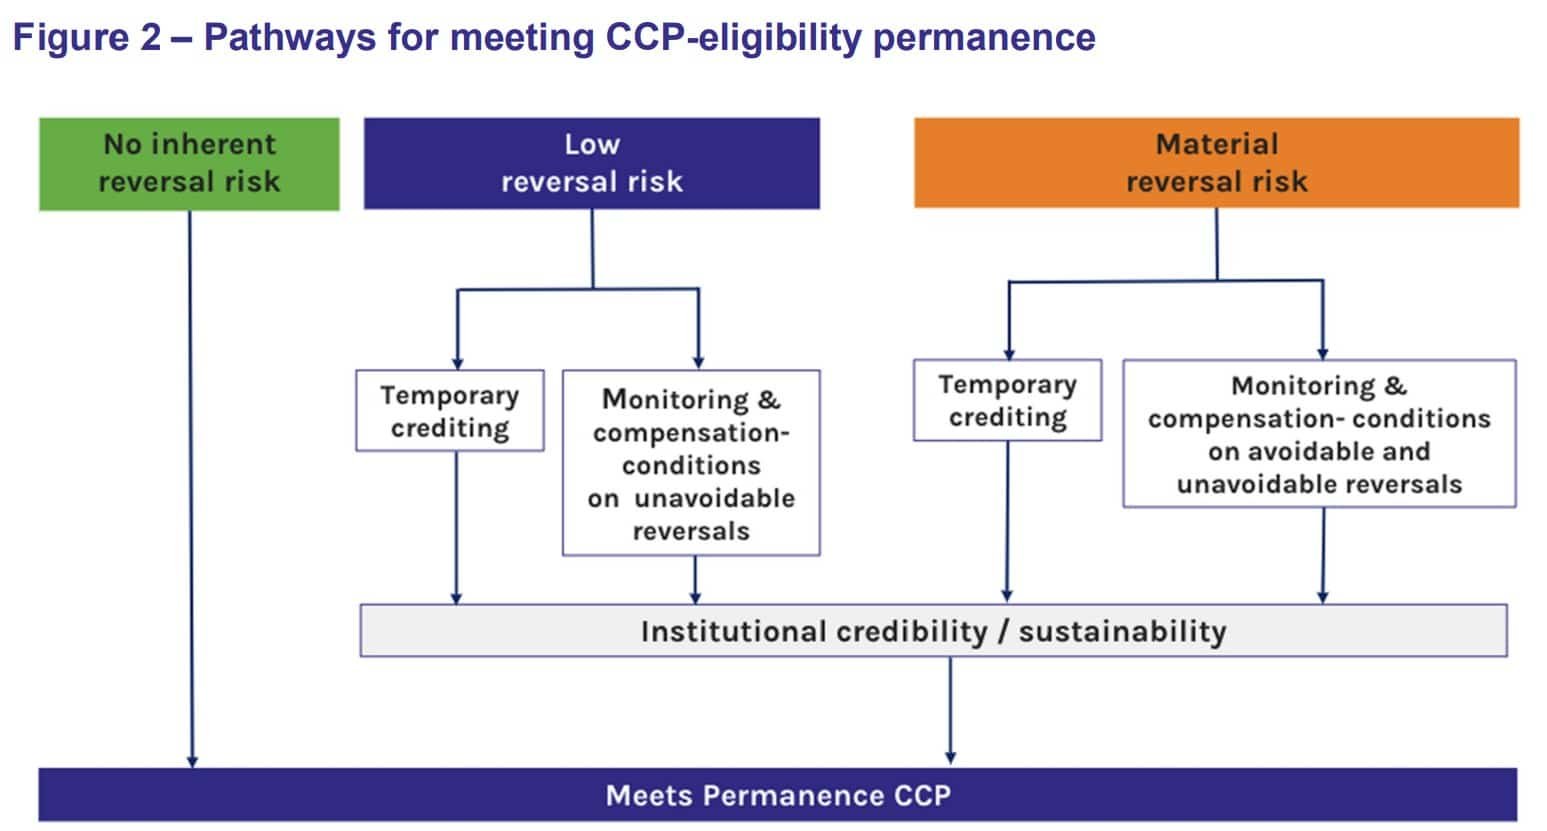 CCP permanence criteria